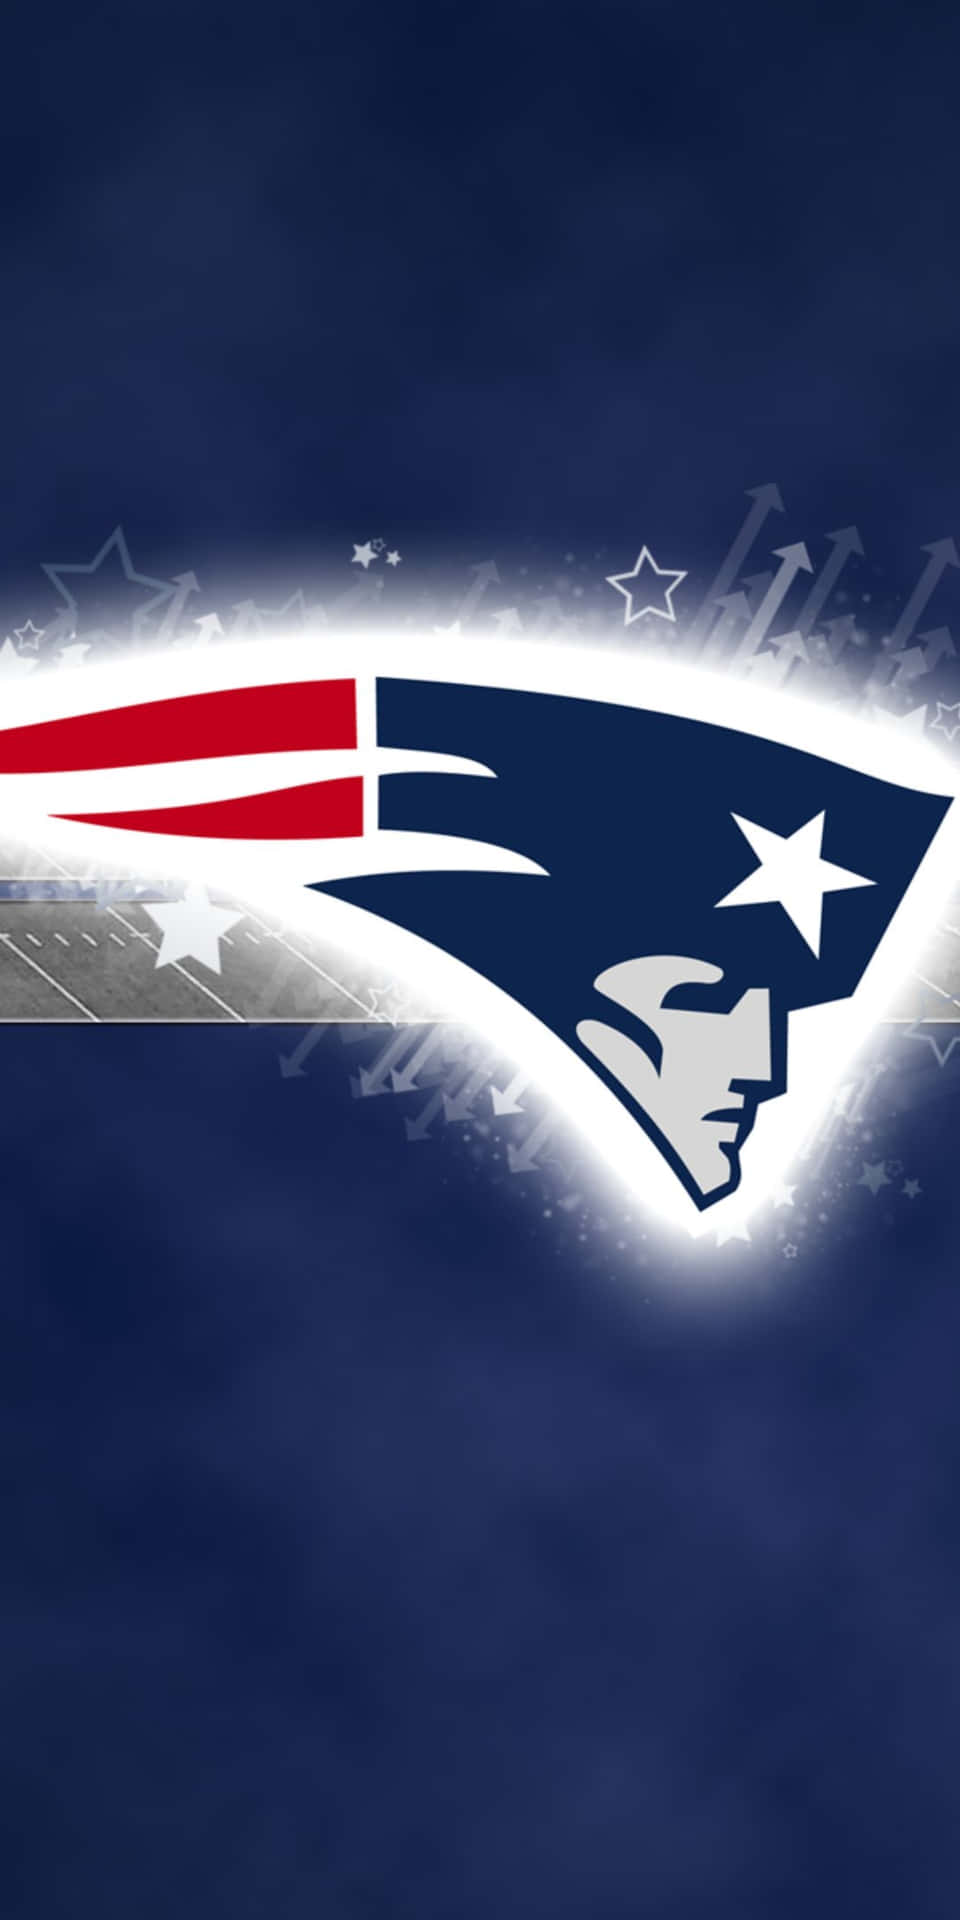 Fondode Pantalla De Fútbol Del Pixel 3 Con El Logotipo De Los New England Patriots